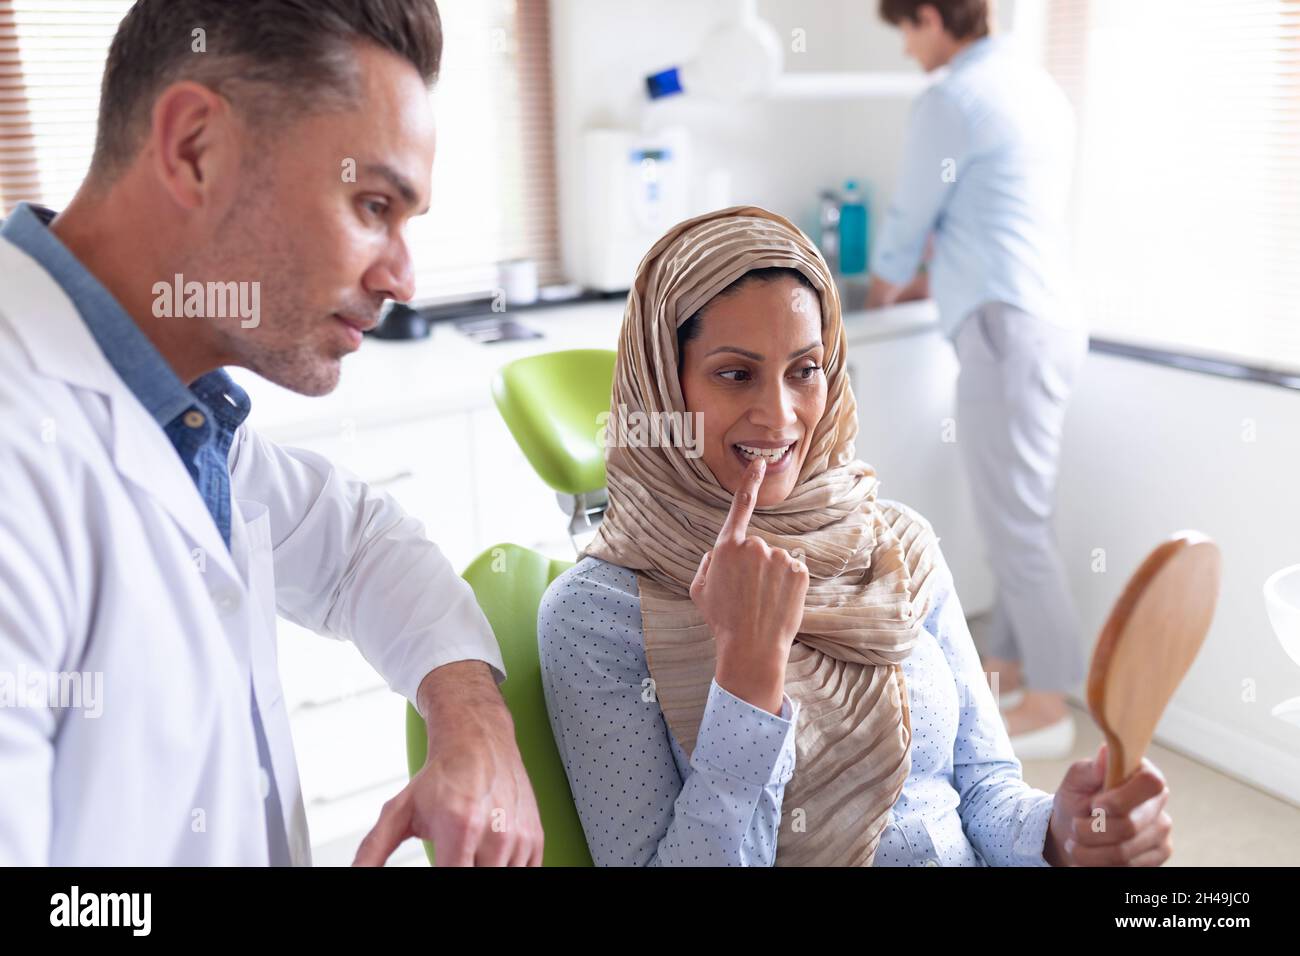 Un dentiste de sexe caucasien examine les dents d'une patiente dans une clinique dentaire moderne Banque D'Images